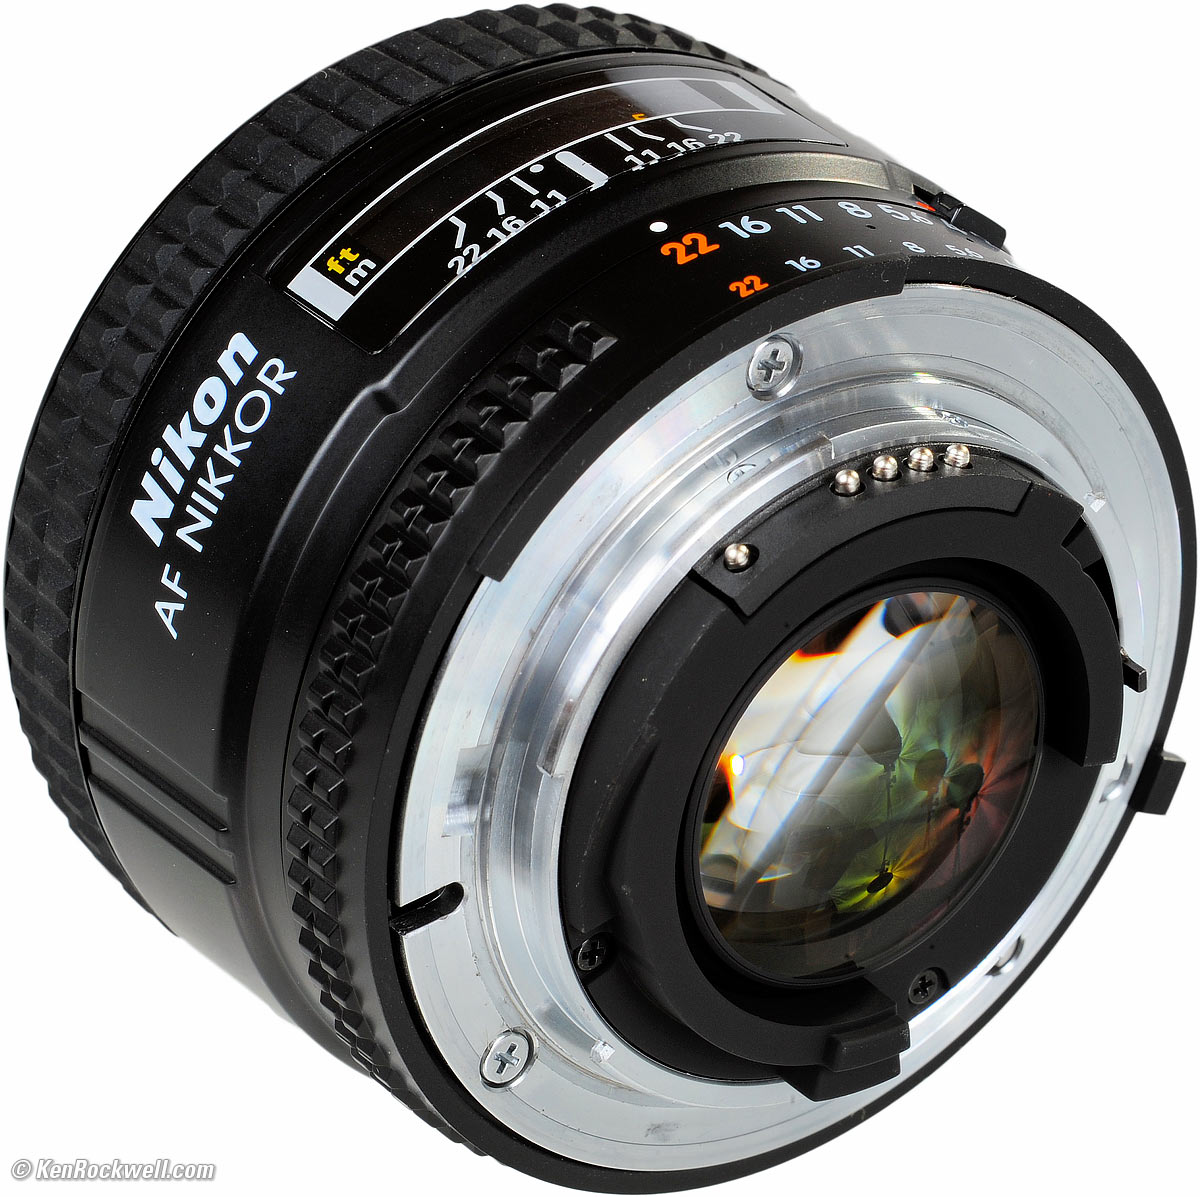 Nikon 35mm f/2 AF-D Review